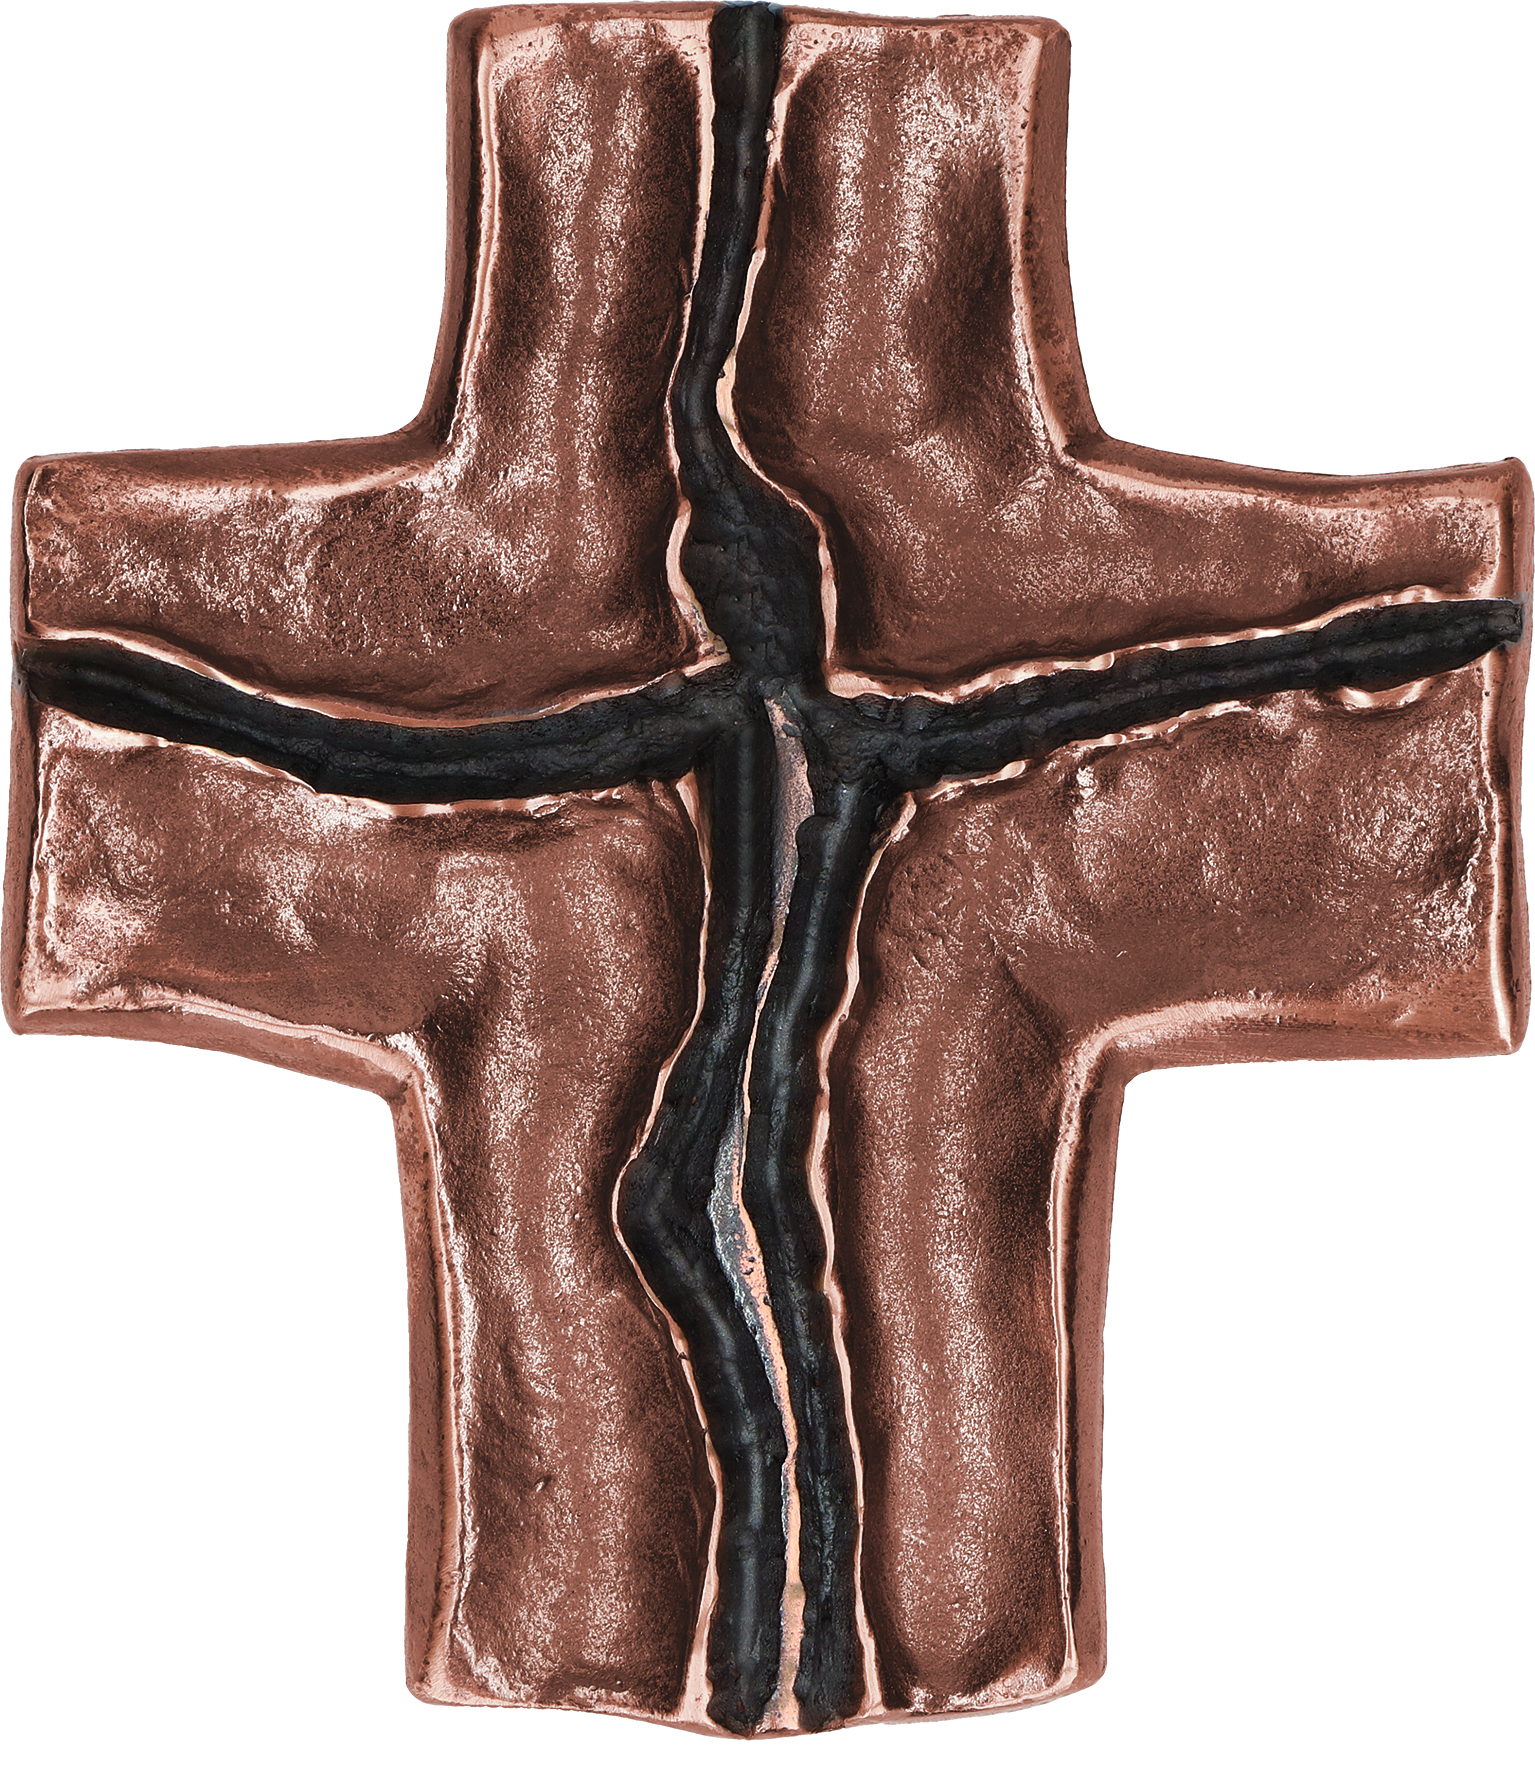 Decorative Cross “Jesus”  Bronze